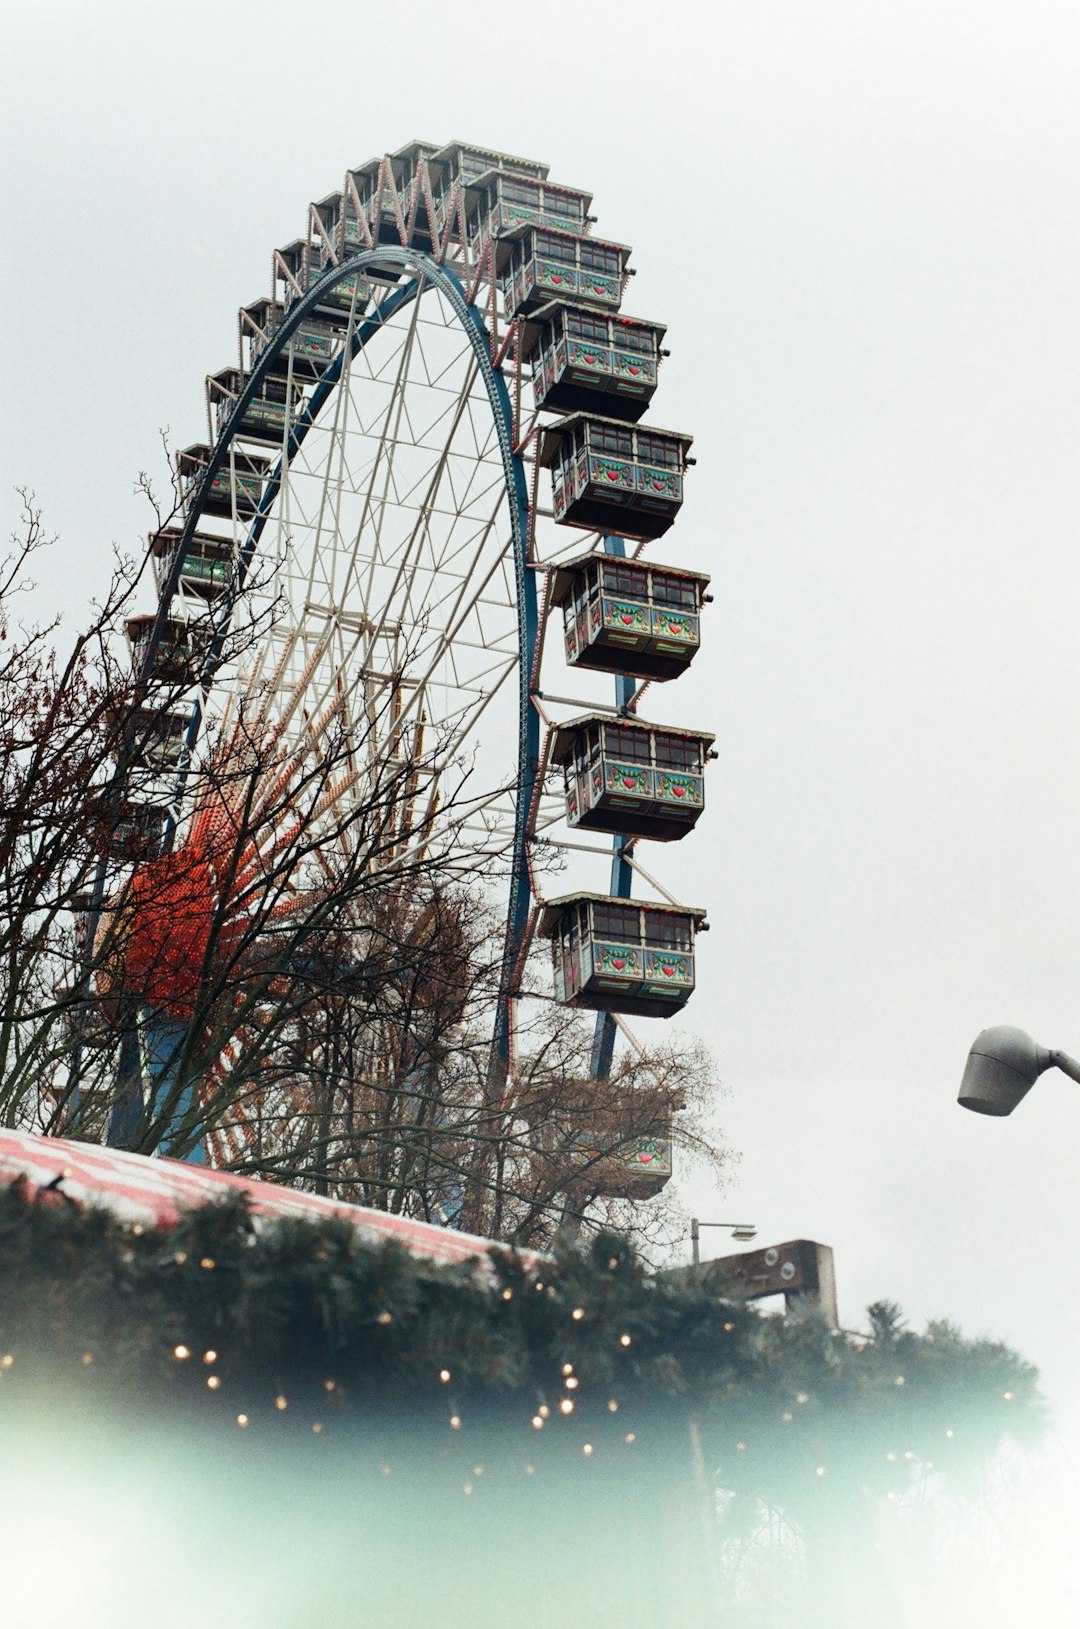 Ferris wheel photo spot Berlin Germany